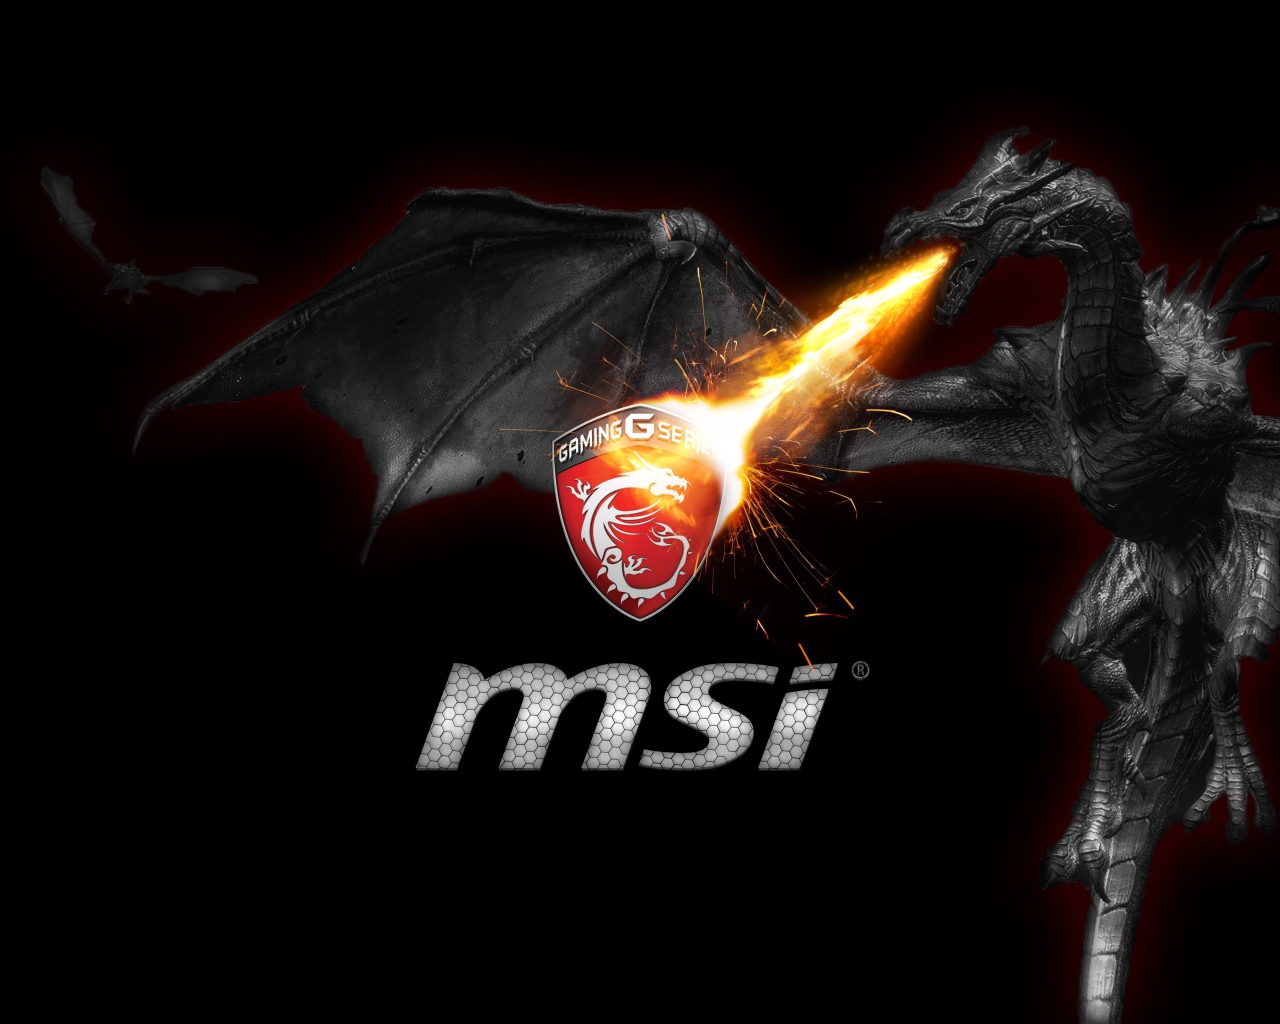 Dragon logo MSI G Series MSI Gaming